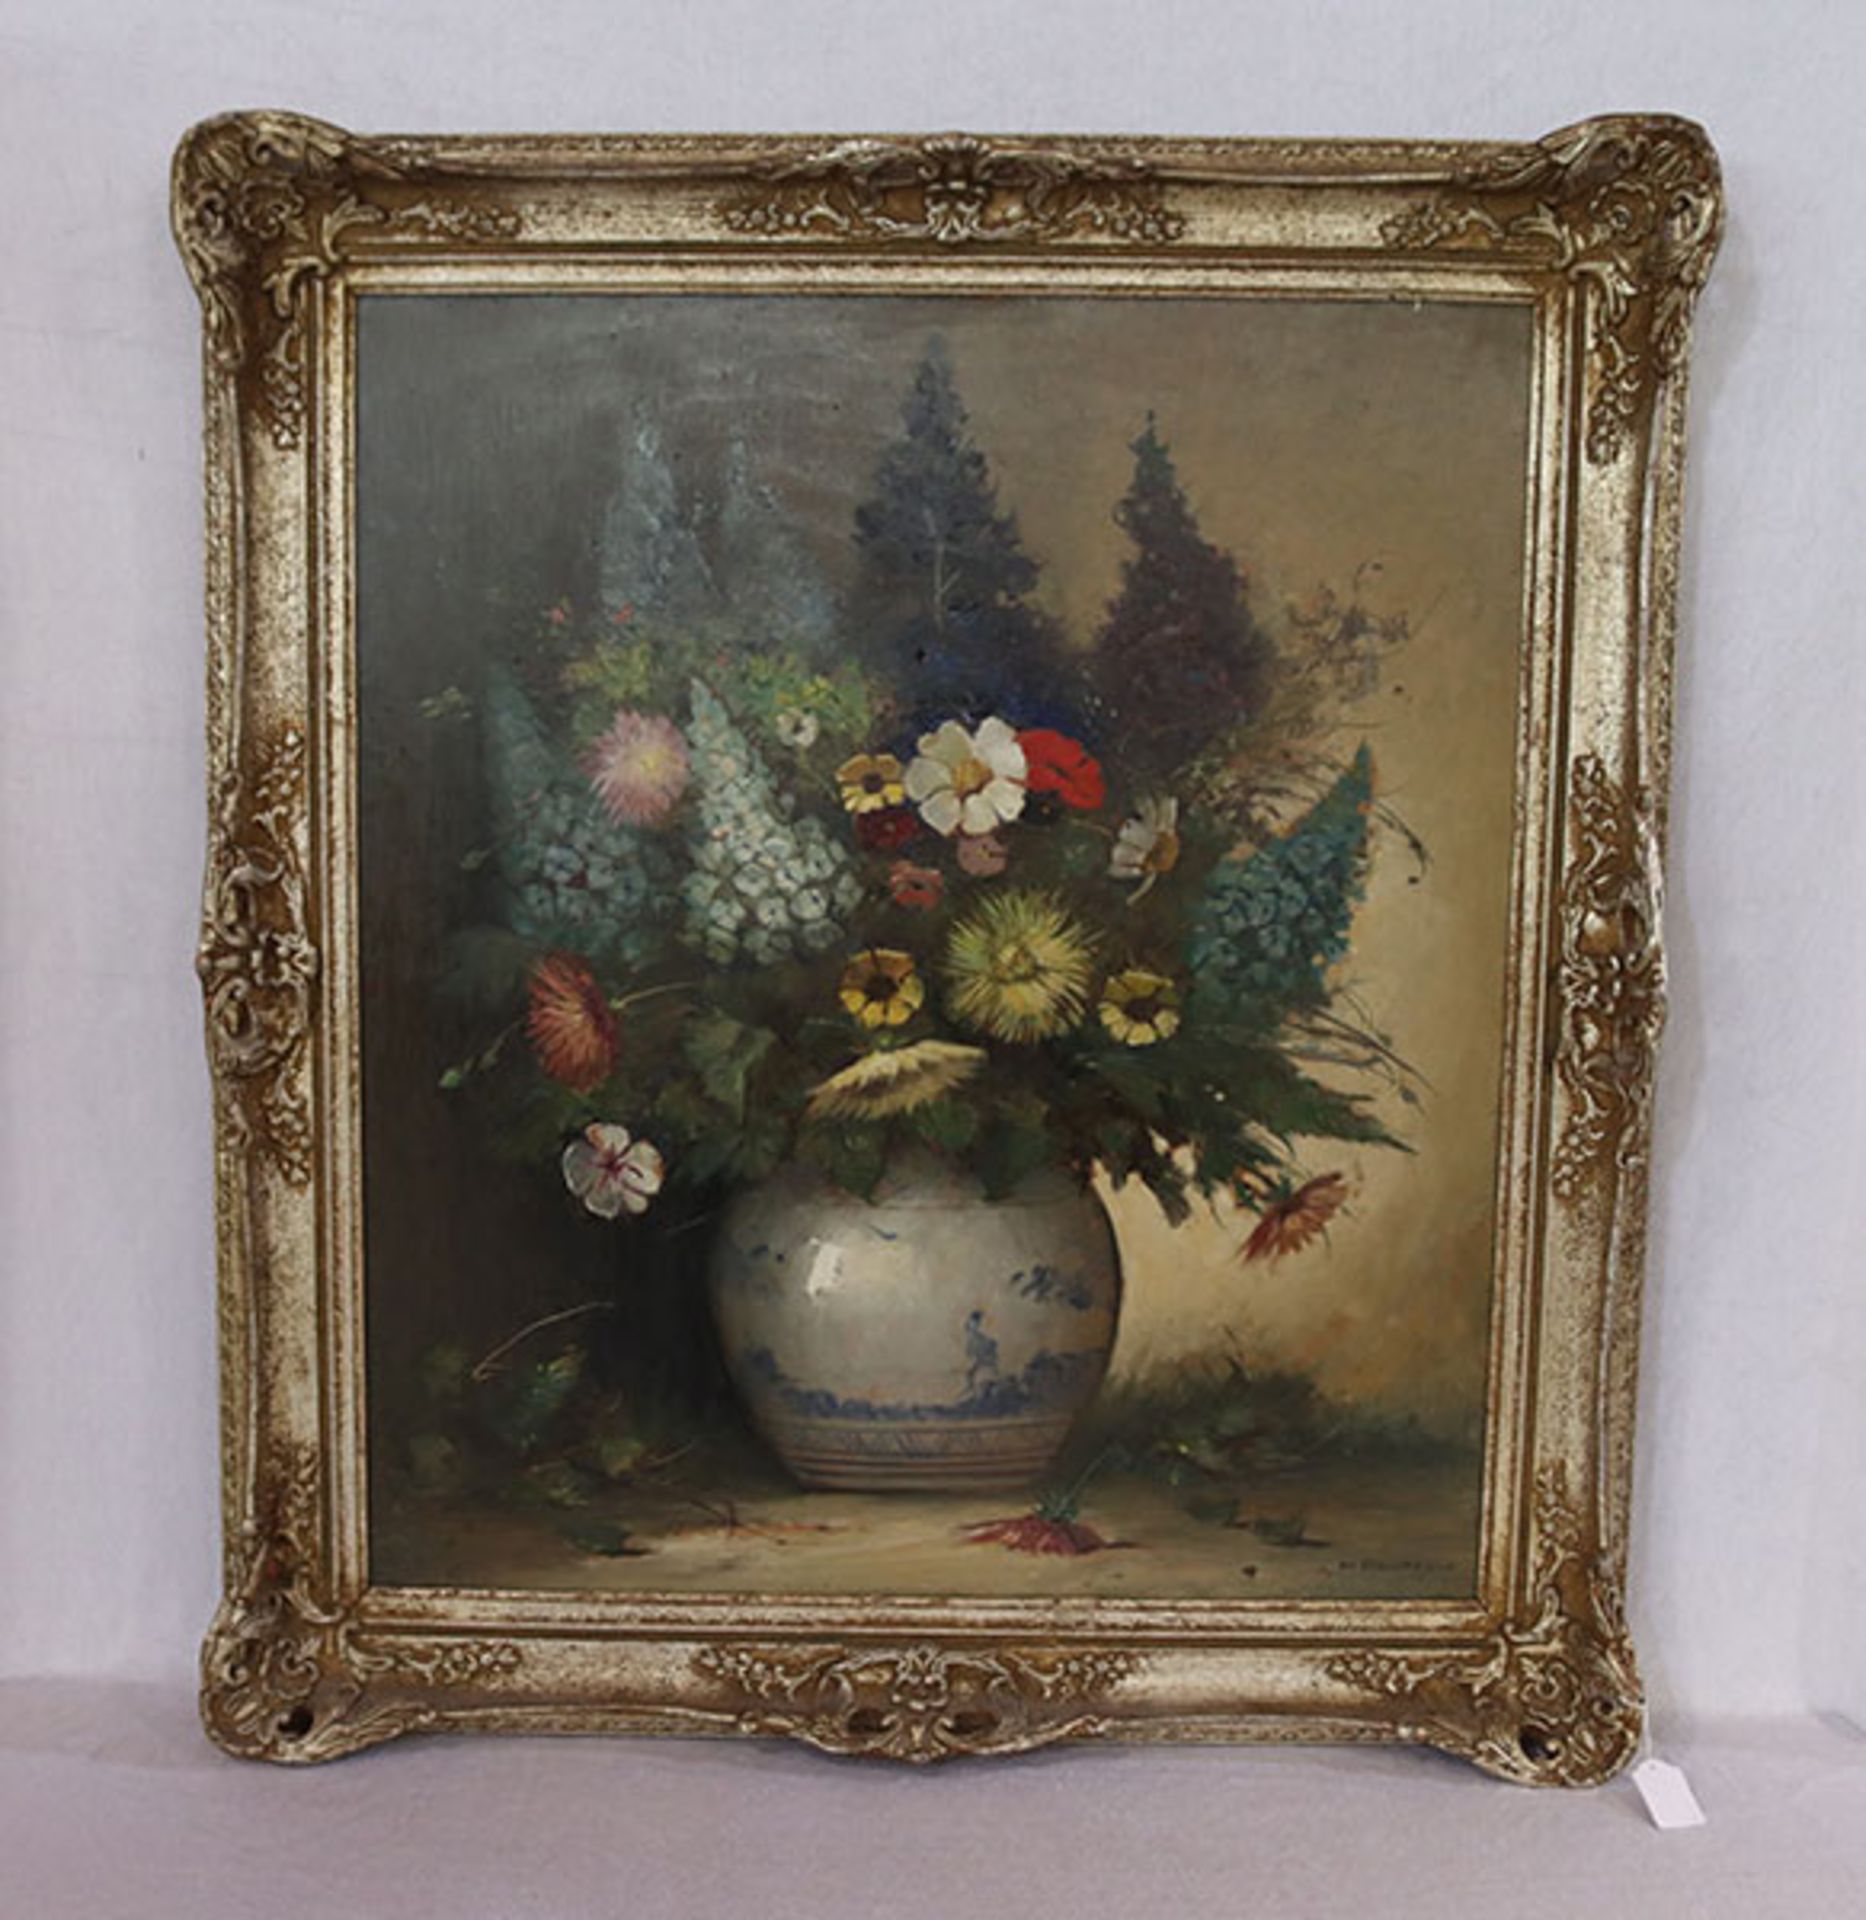 Gemälde ÖL/Malkarton 'Sommerblumen in Vase', signiert Kl. Clausmeyer, Klaus Clausmeyer, * 1887 +